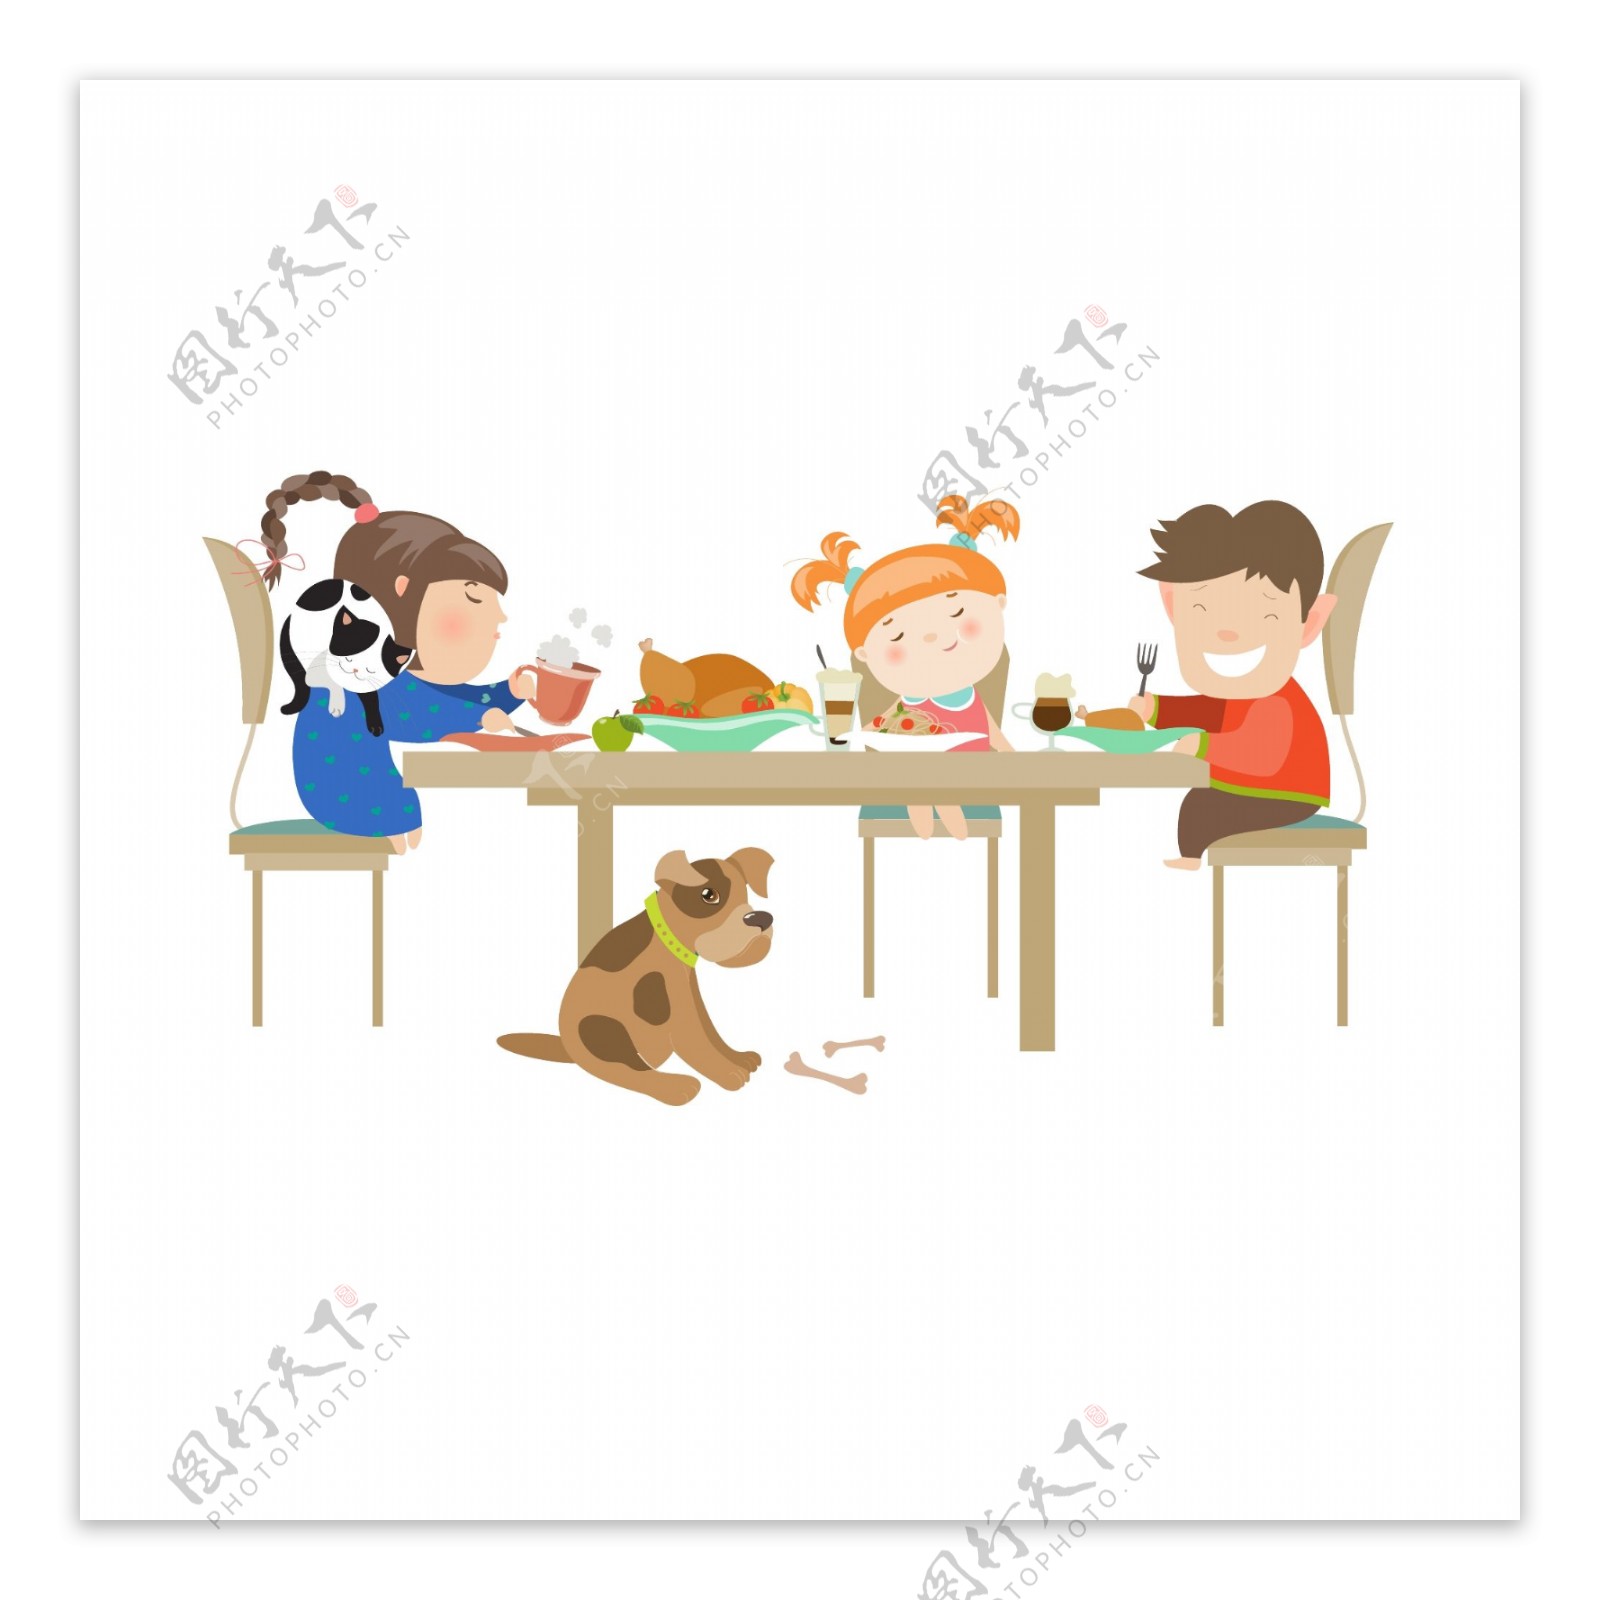 儿童坐在桌子旁边用餐